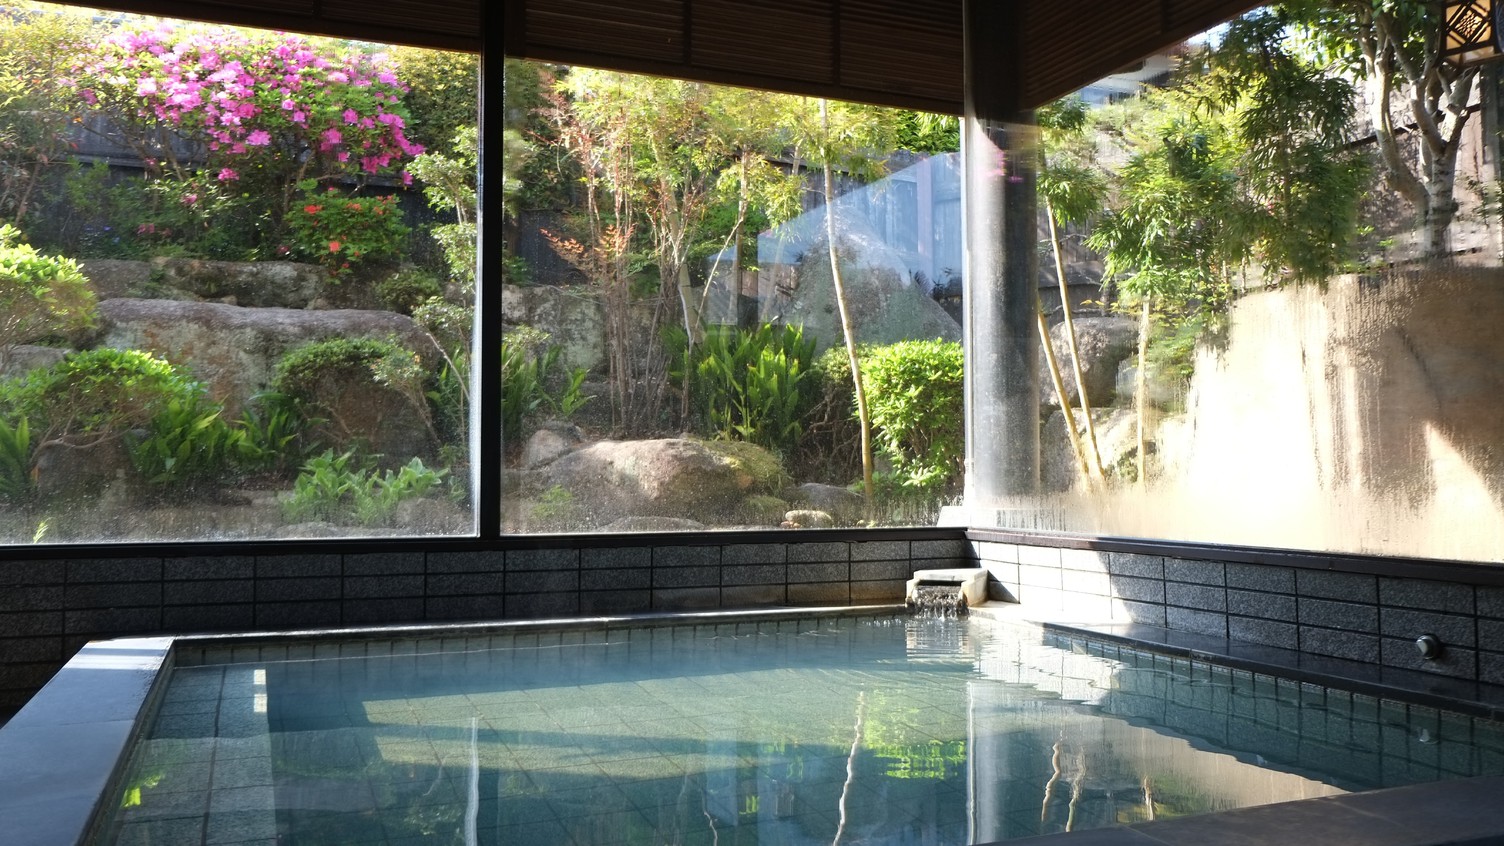 【浴場一例】宮浜温泉はラドン含有量が高く、温かさが続きます。